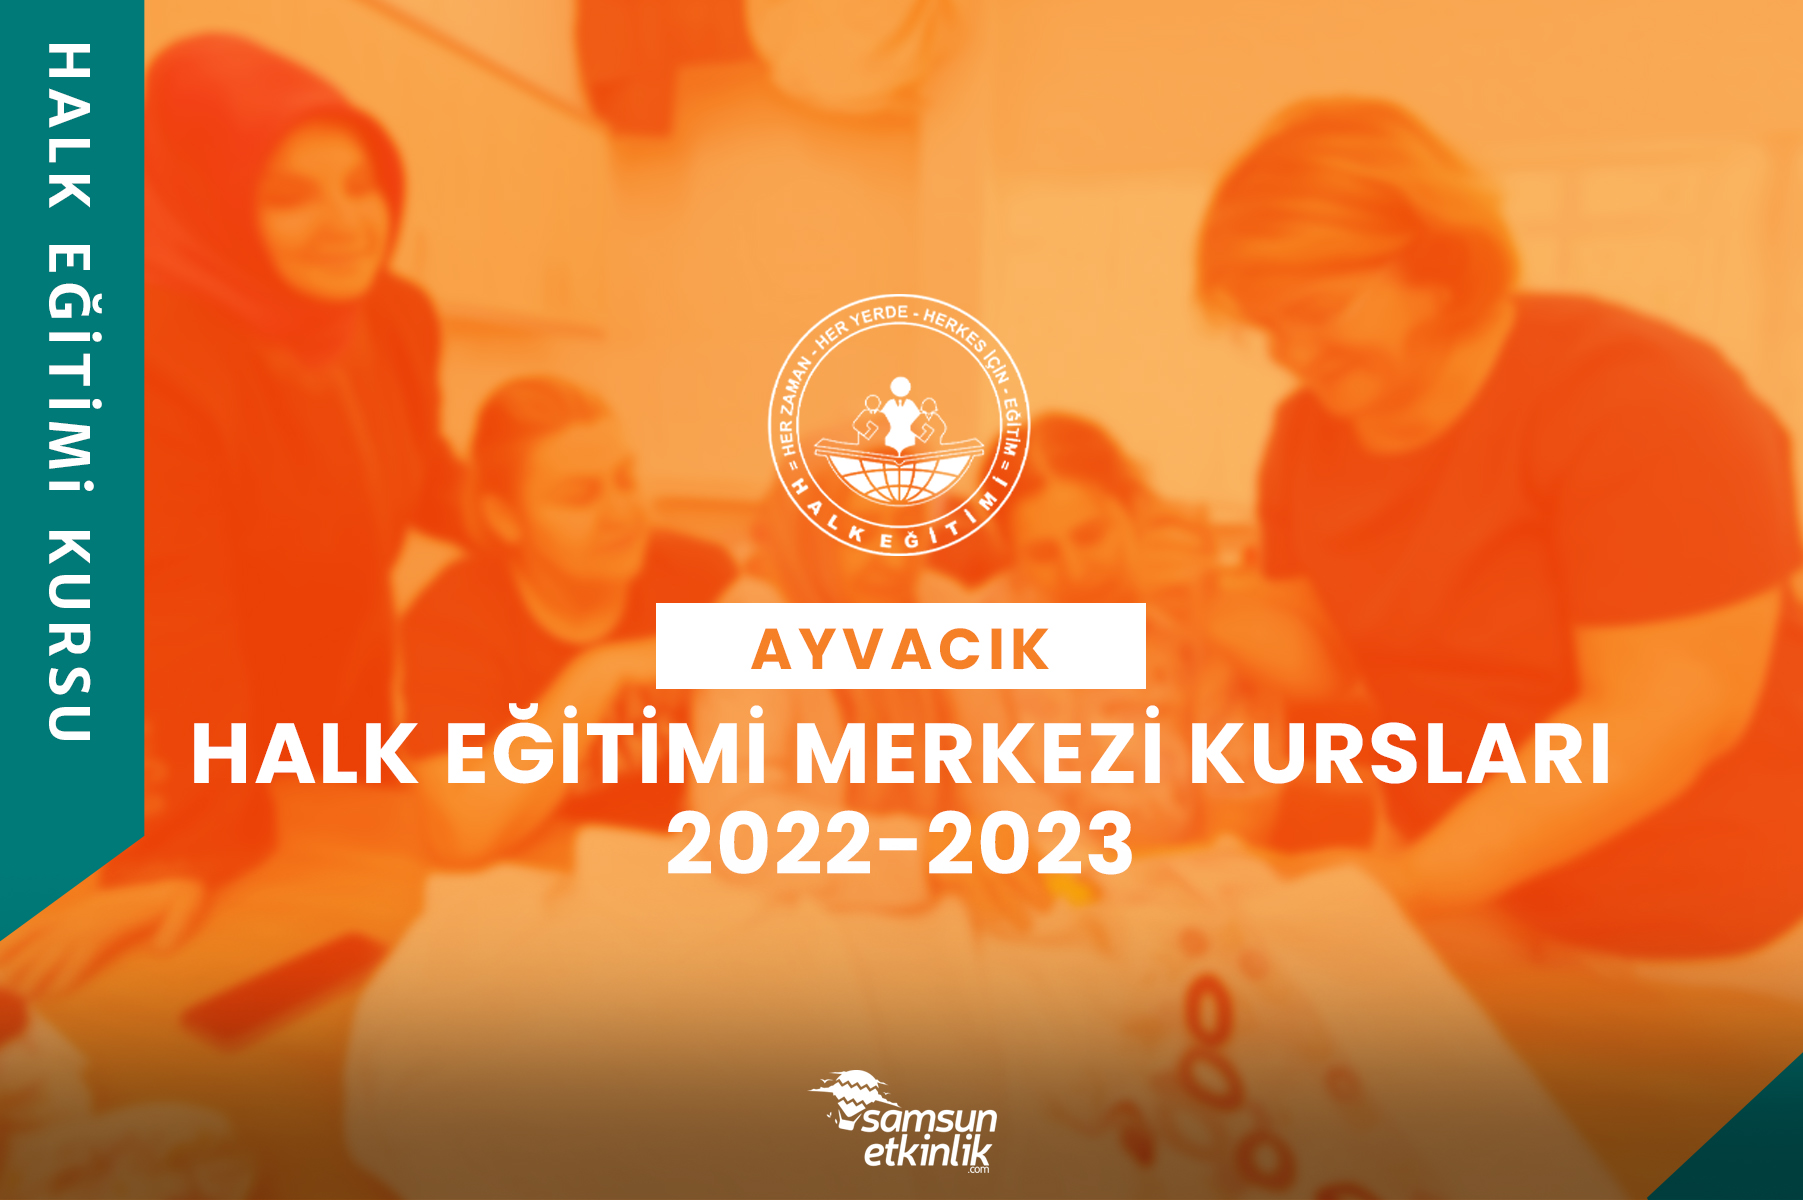 Samsun Ayvacık Halk Eğitimi Merkezi Kursları 2022-2023